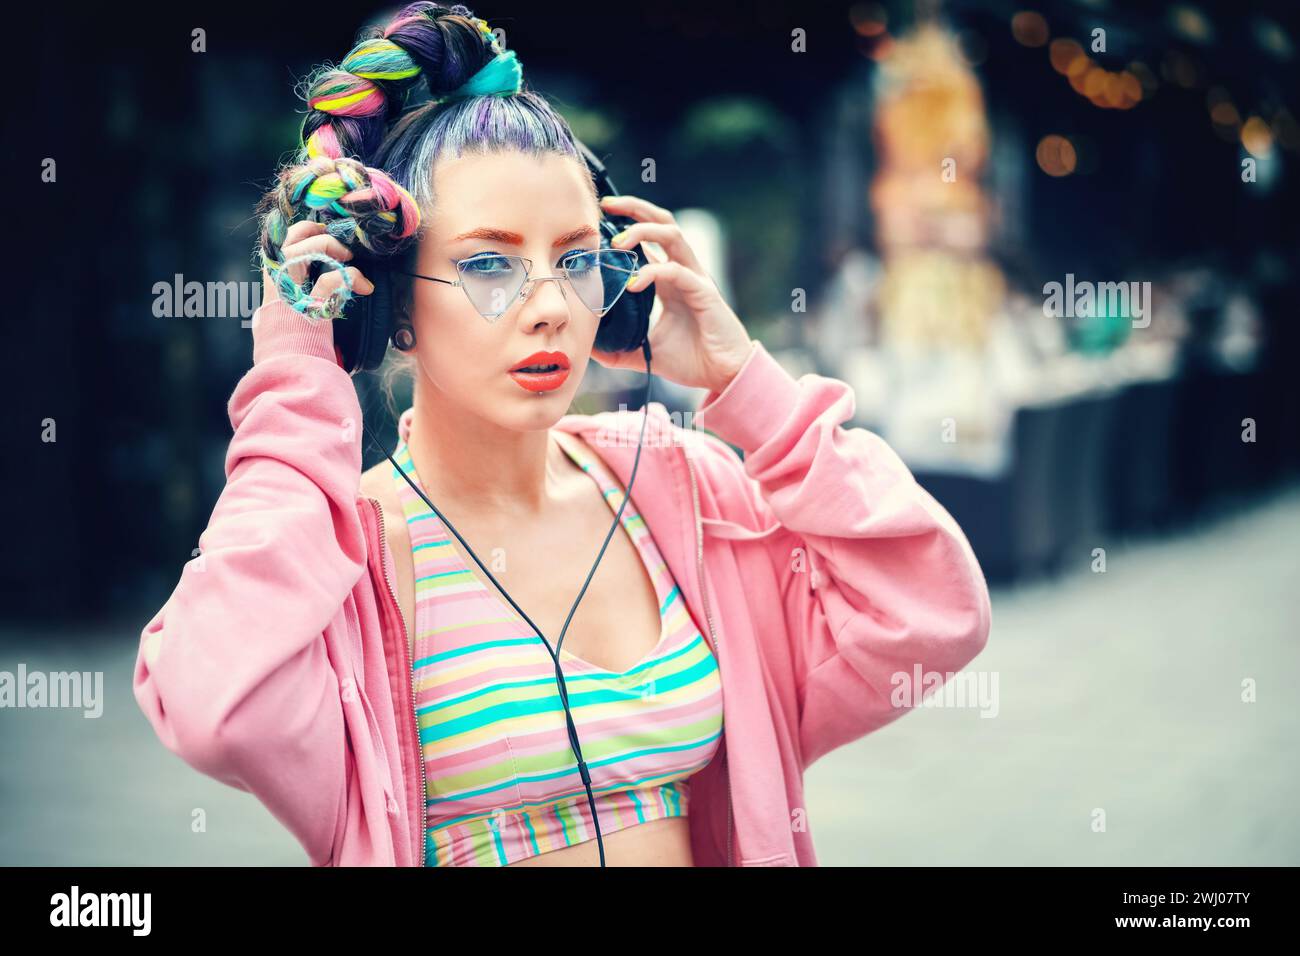 Porträt eines urbanen Gen z Mädchens mit trendiger Frisur Genießen Sie Musik auf großen Kopfhörern während des Street Music Festivals Stockfoto